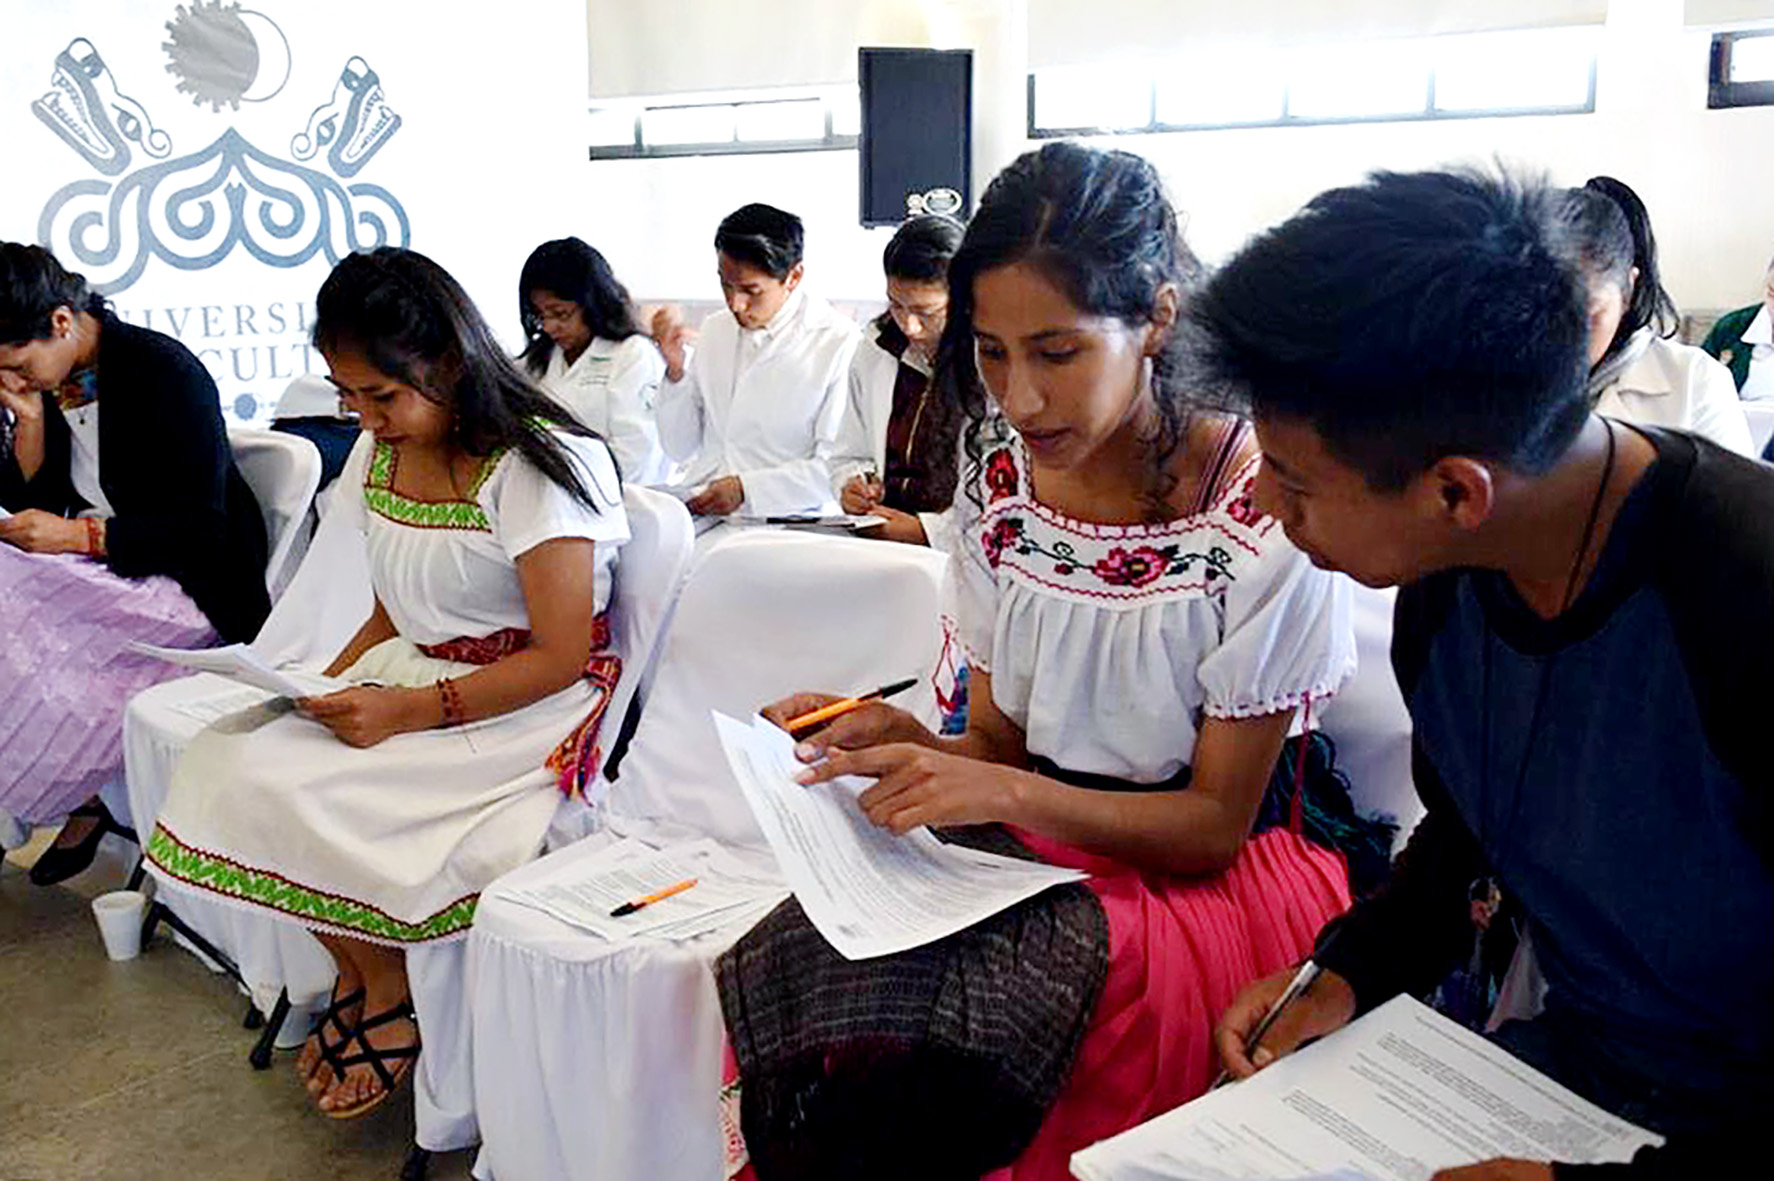 Sistema tradicional de educación superior excluye a los indígenas en América Latina: Unesco